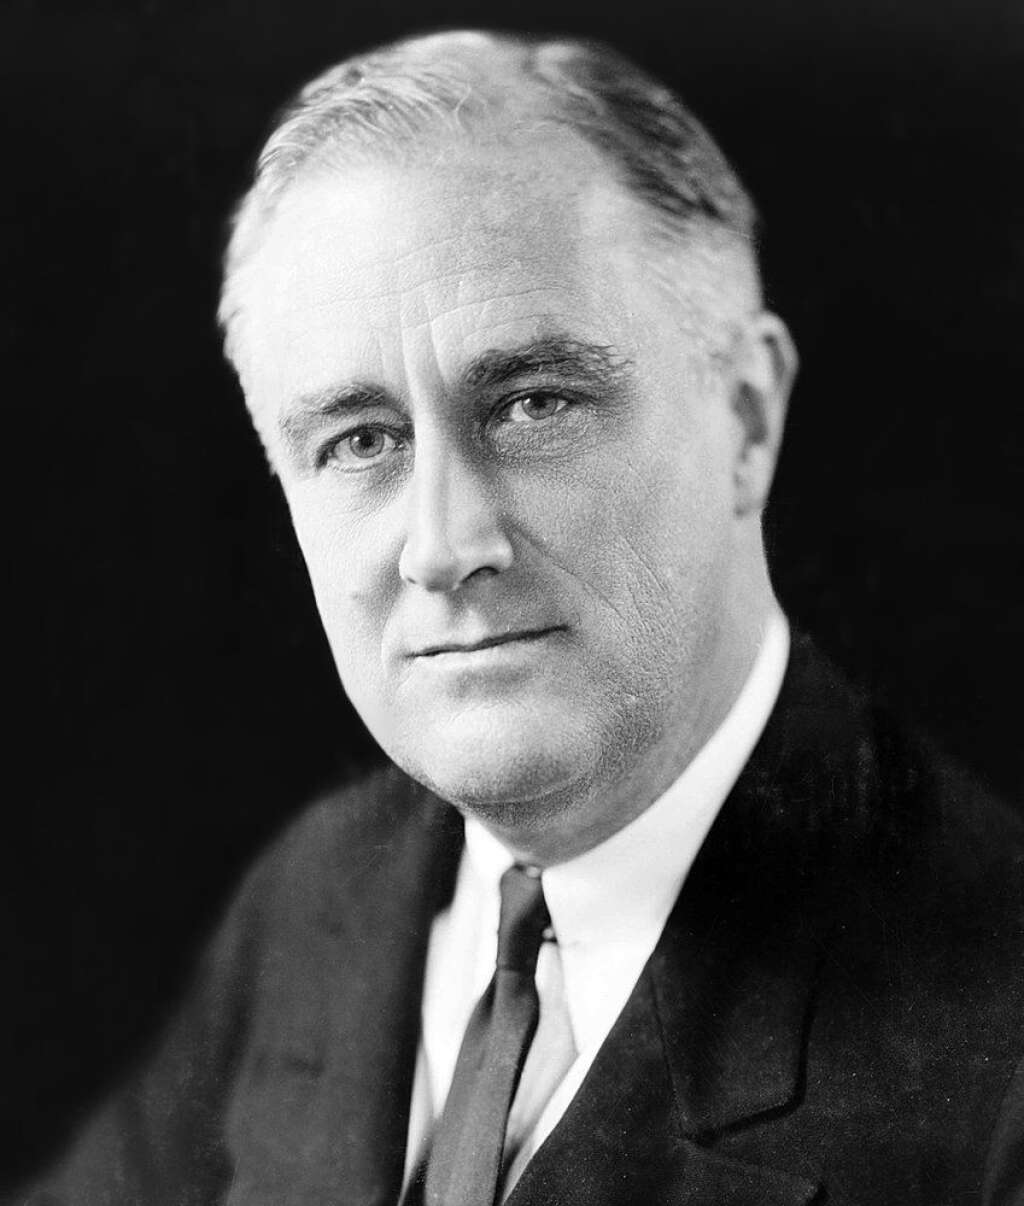 Franklin D. Roosevelt 1933-1945 -